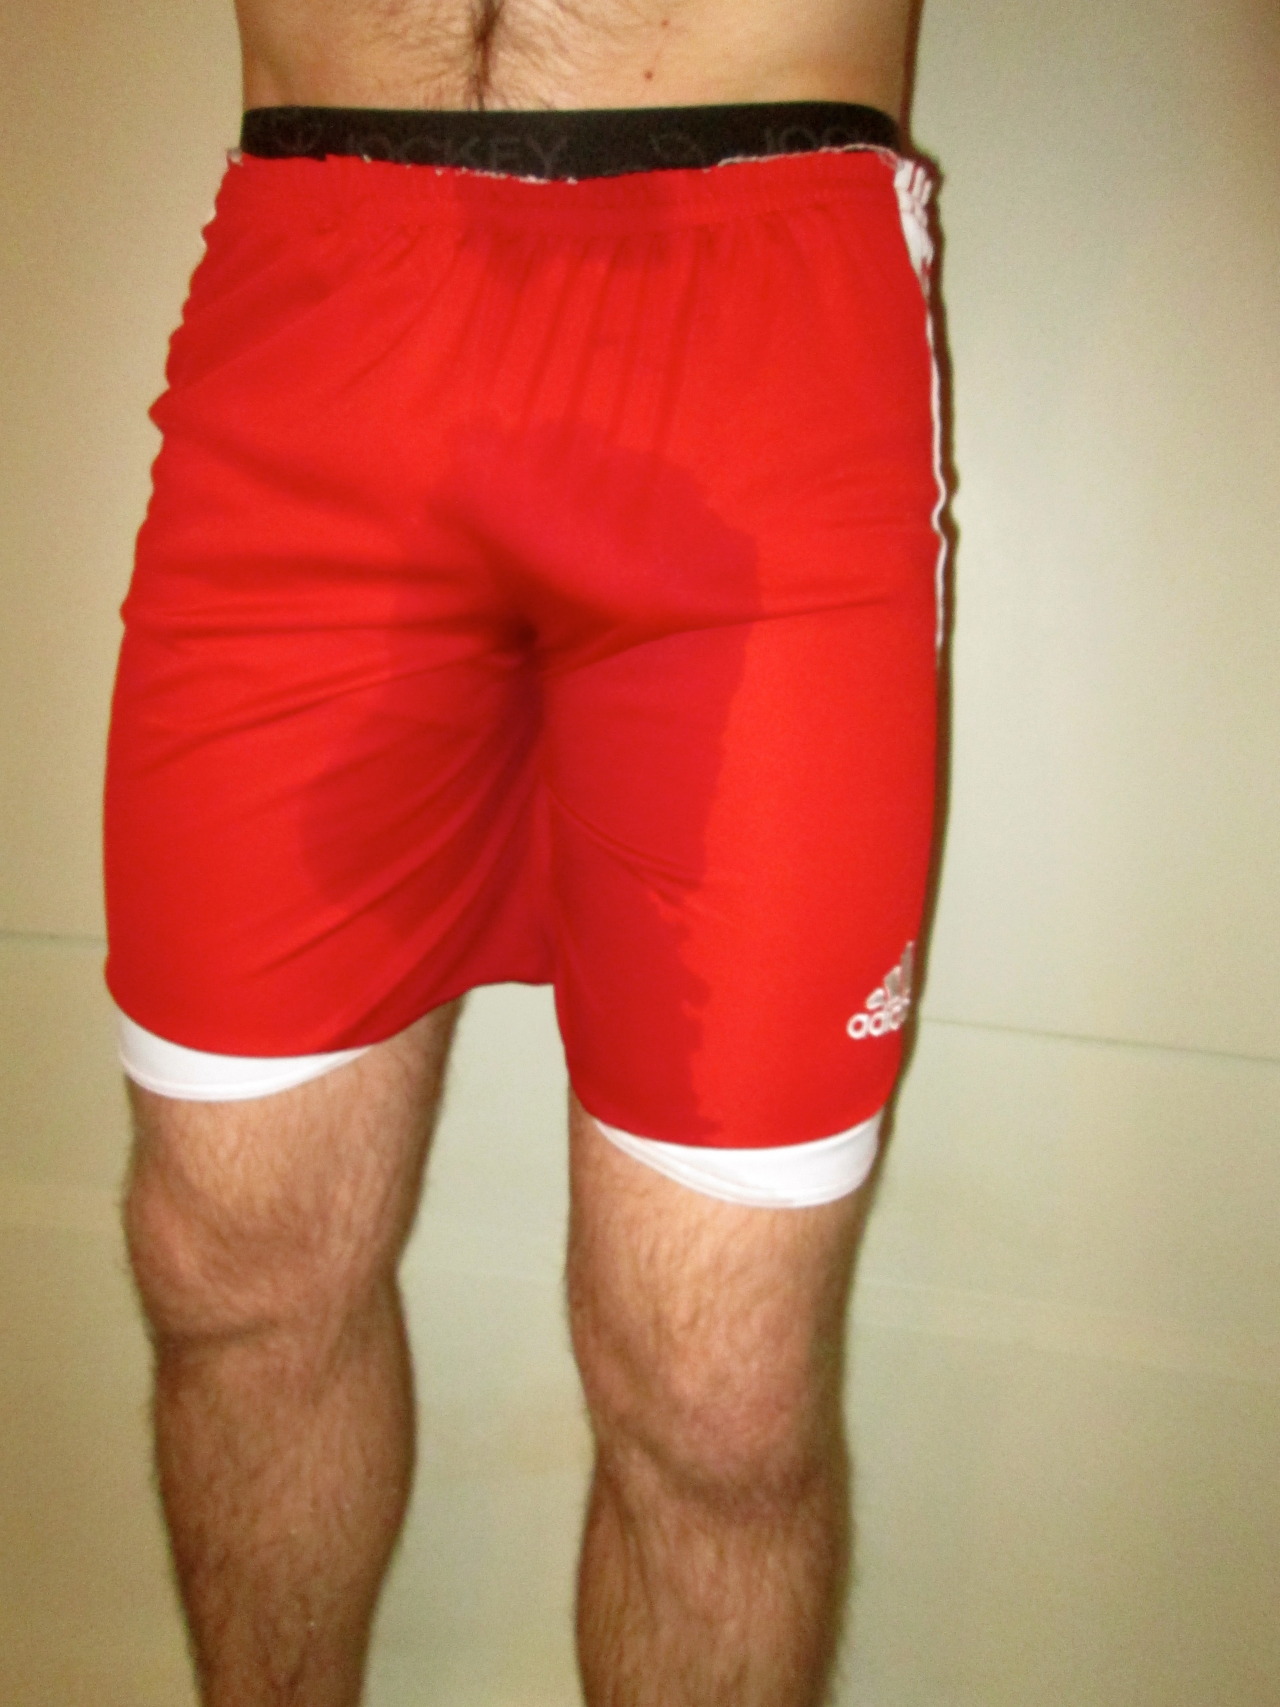 wetgayathlete:  pissed my red shorts and jockey underwear. 